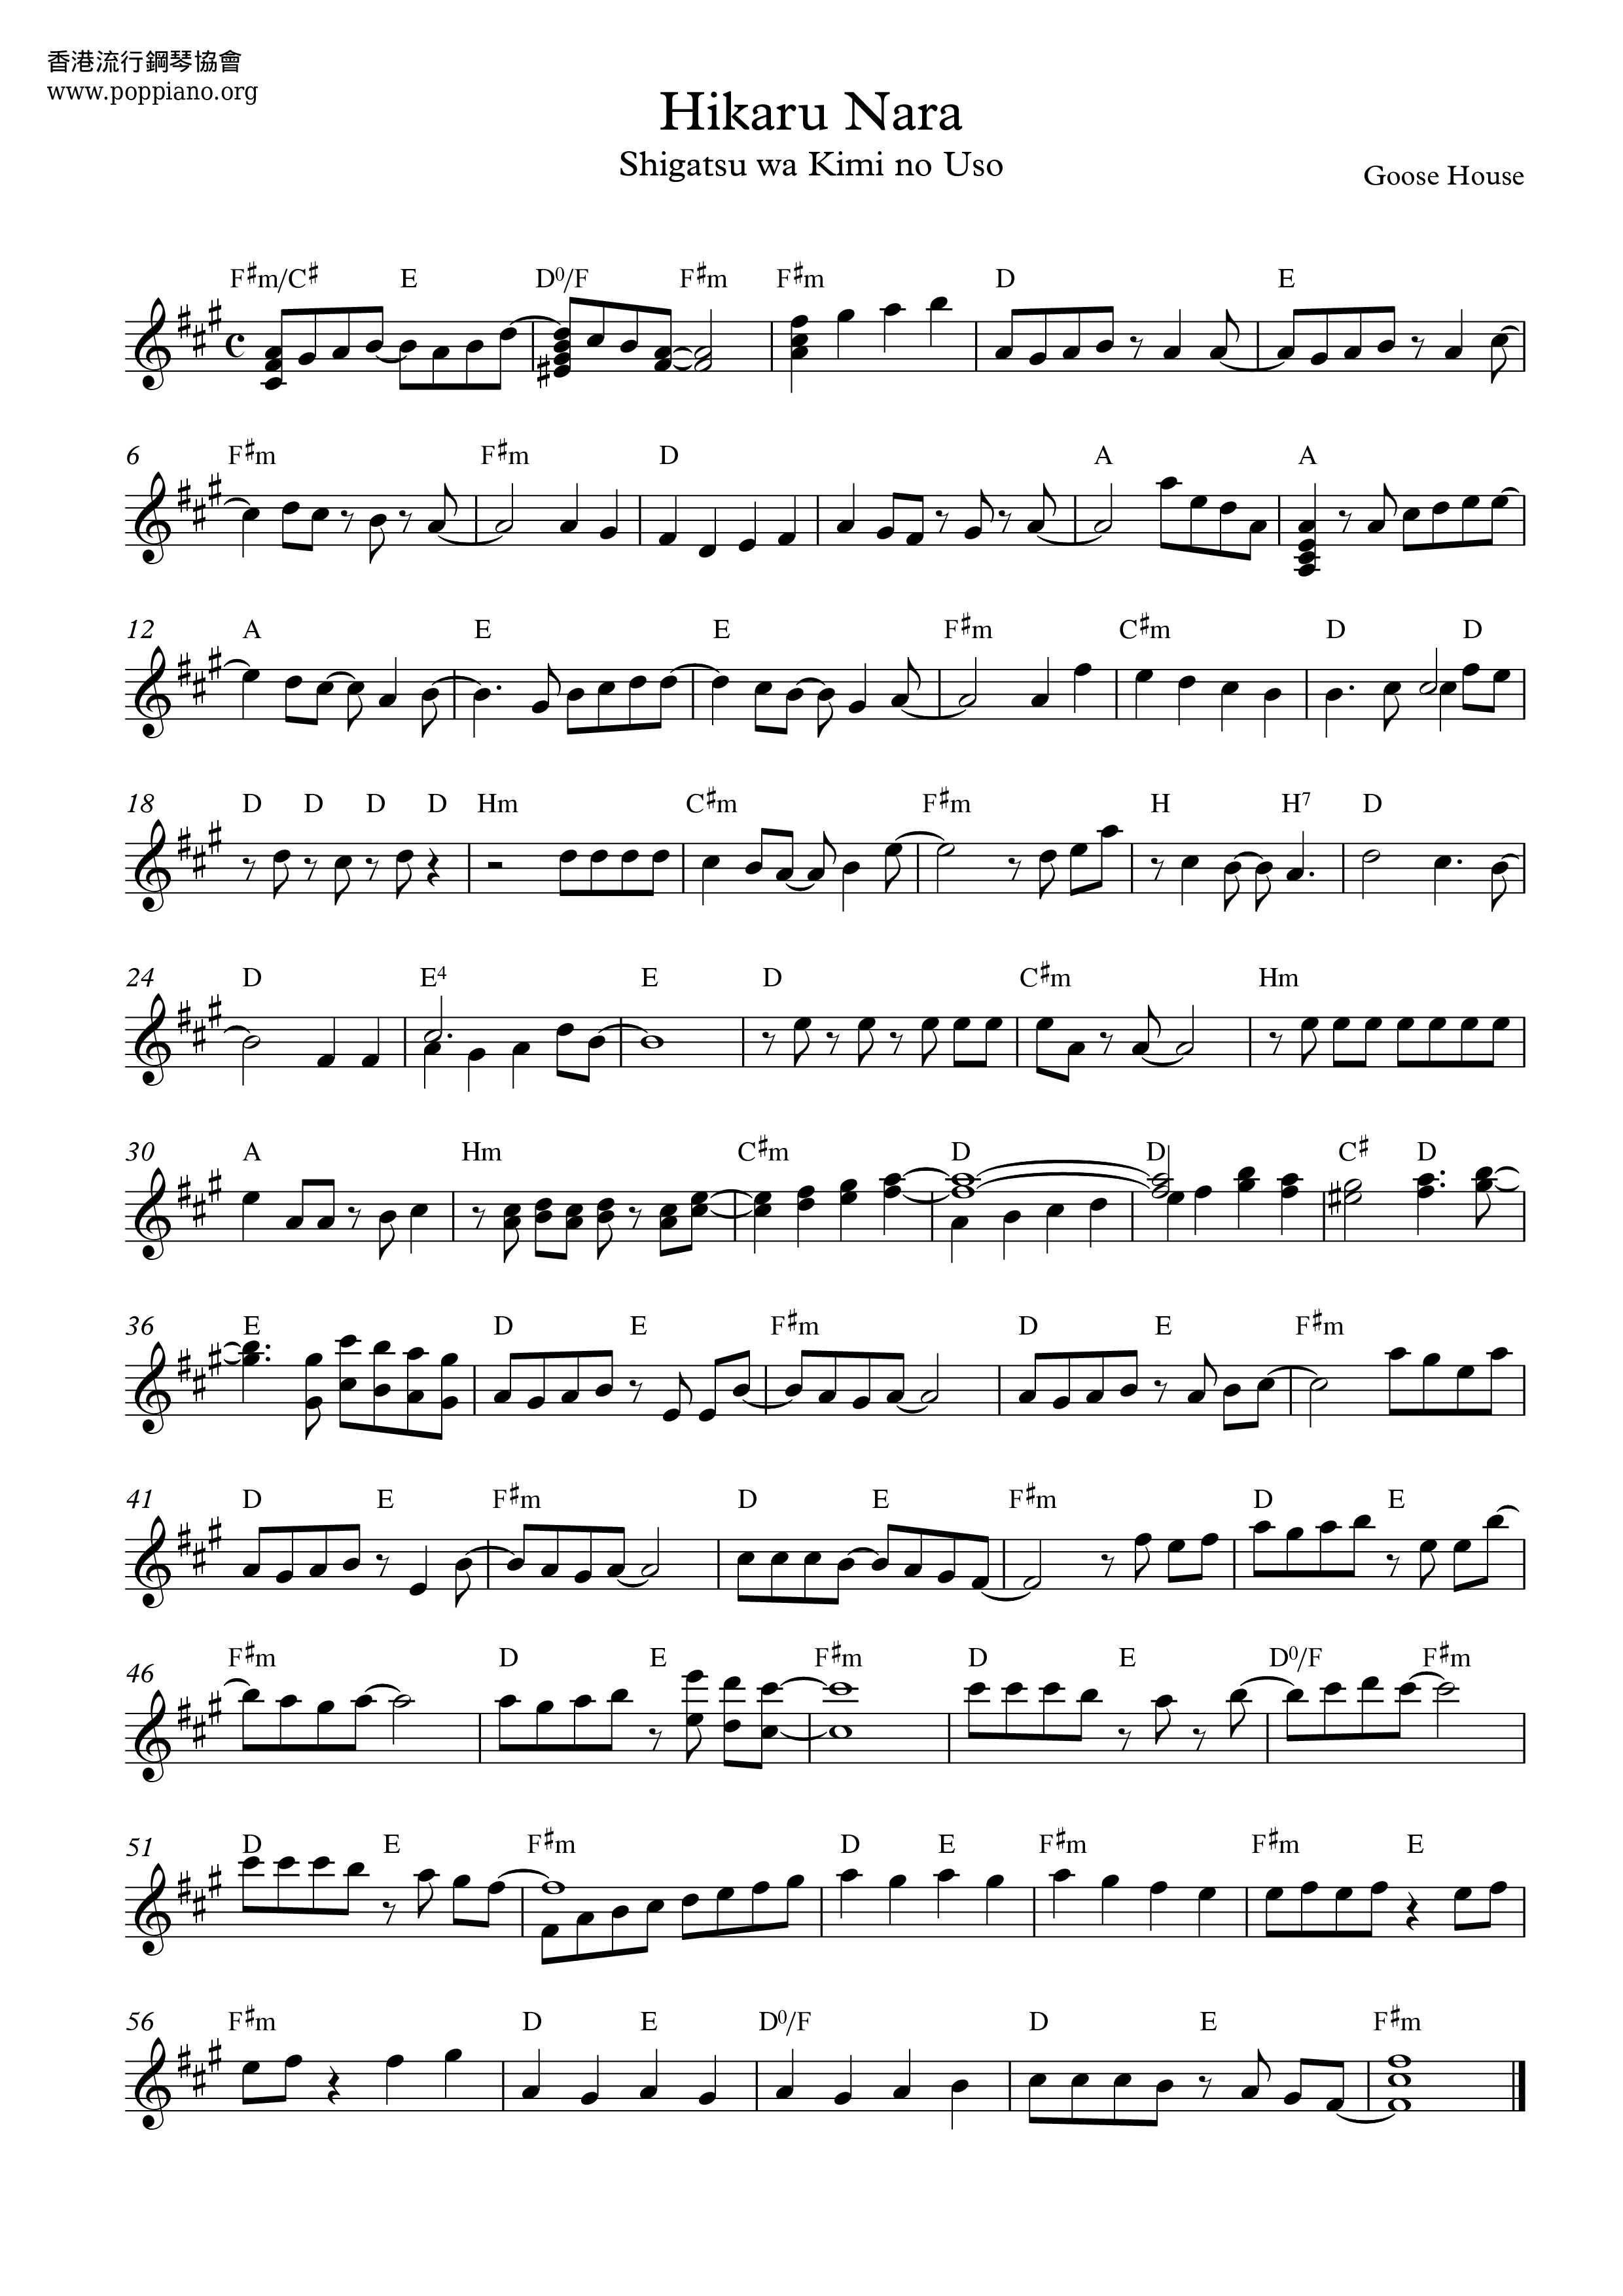 グースハウス 四月は君の嘘 光るなら 楽谱 メロディpdf 香港ポップピアノ協会 無料pdf楽譜ダウンロード Gakufu